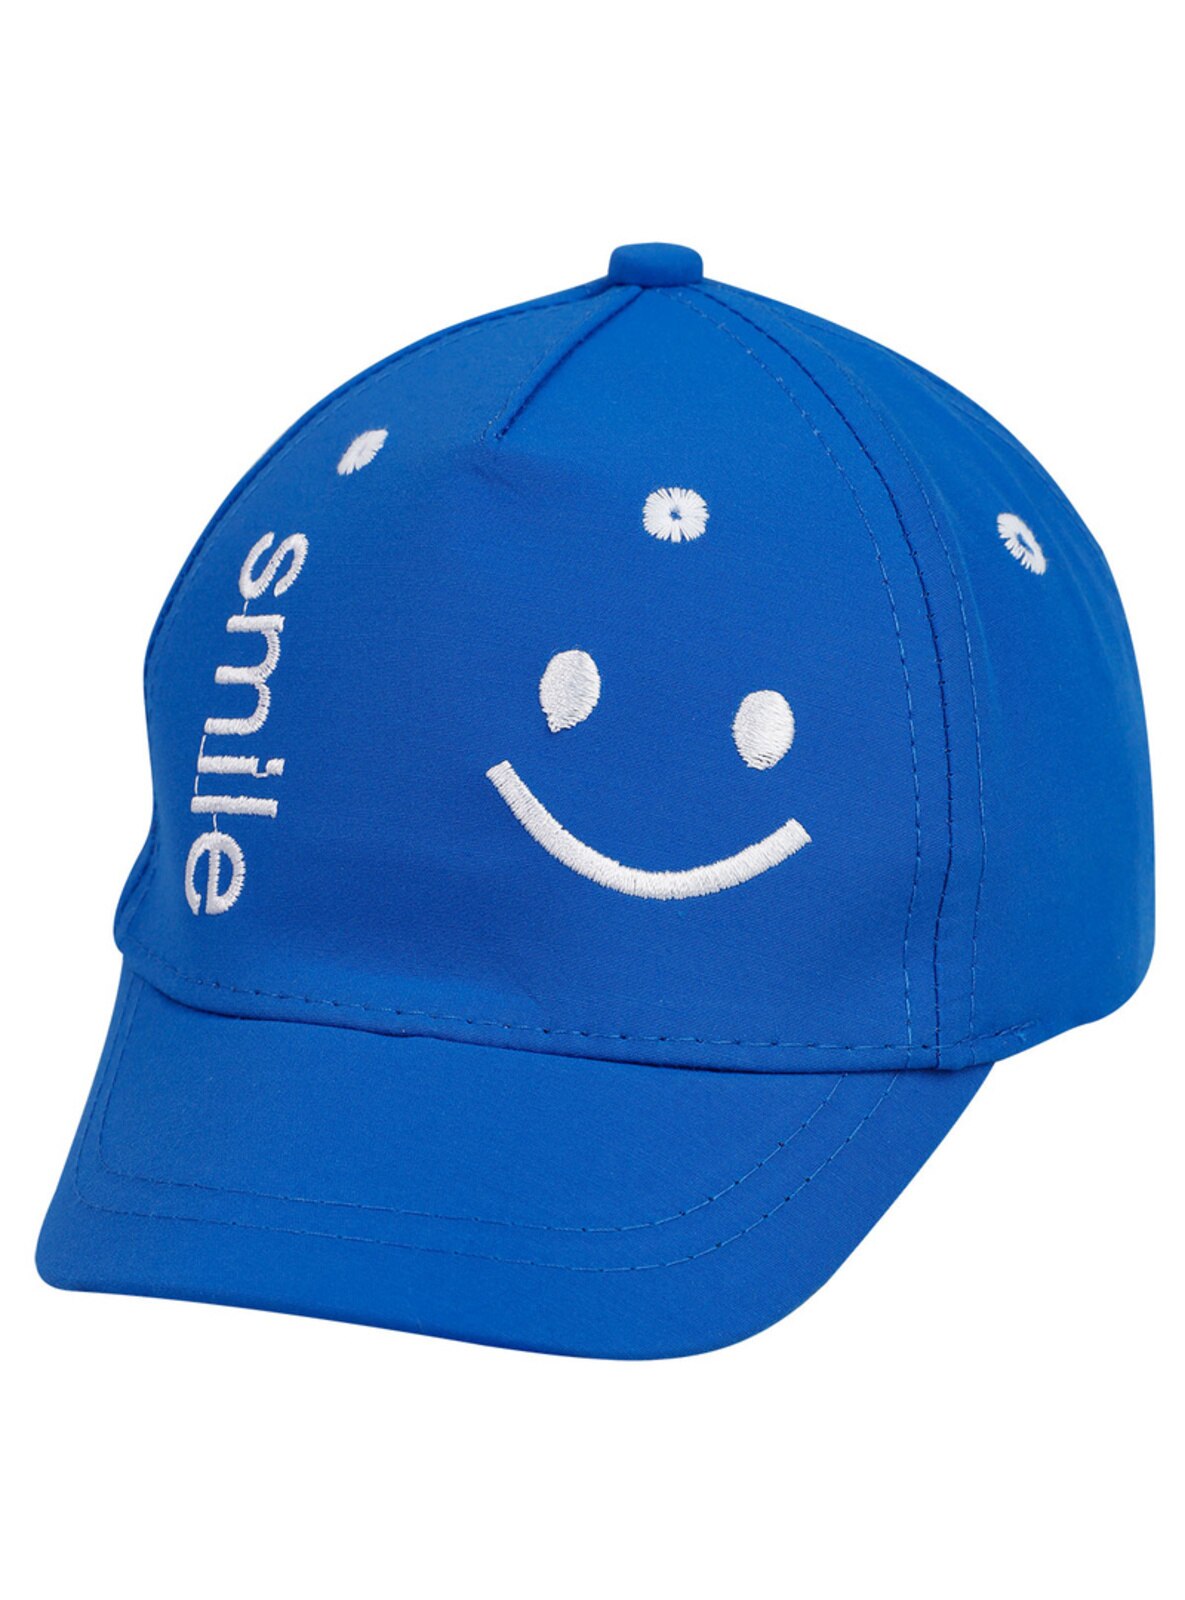 Blue - Baby Headbands, Hats & Hairclips